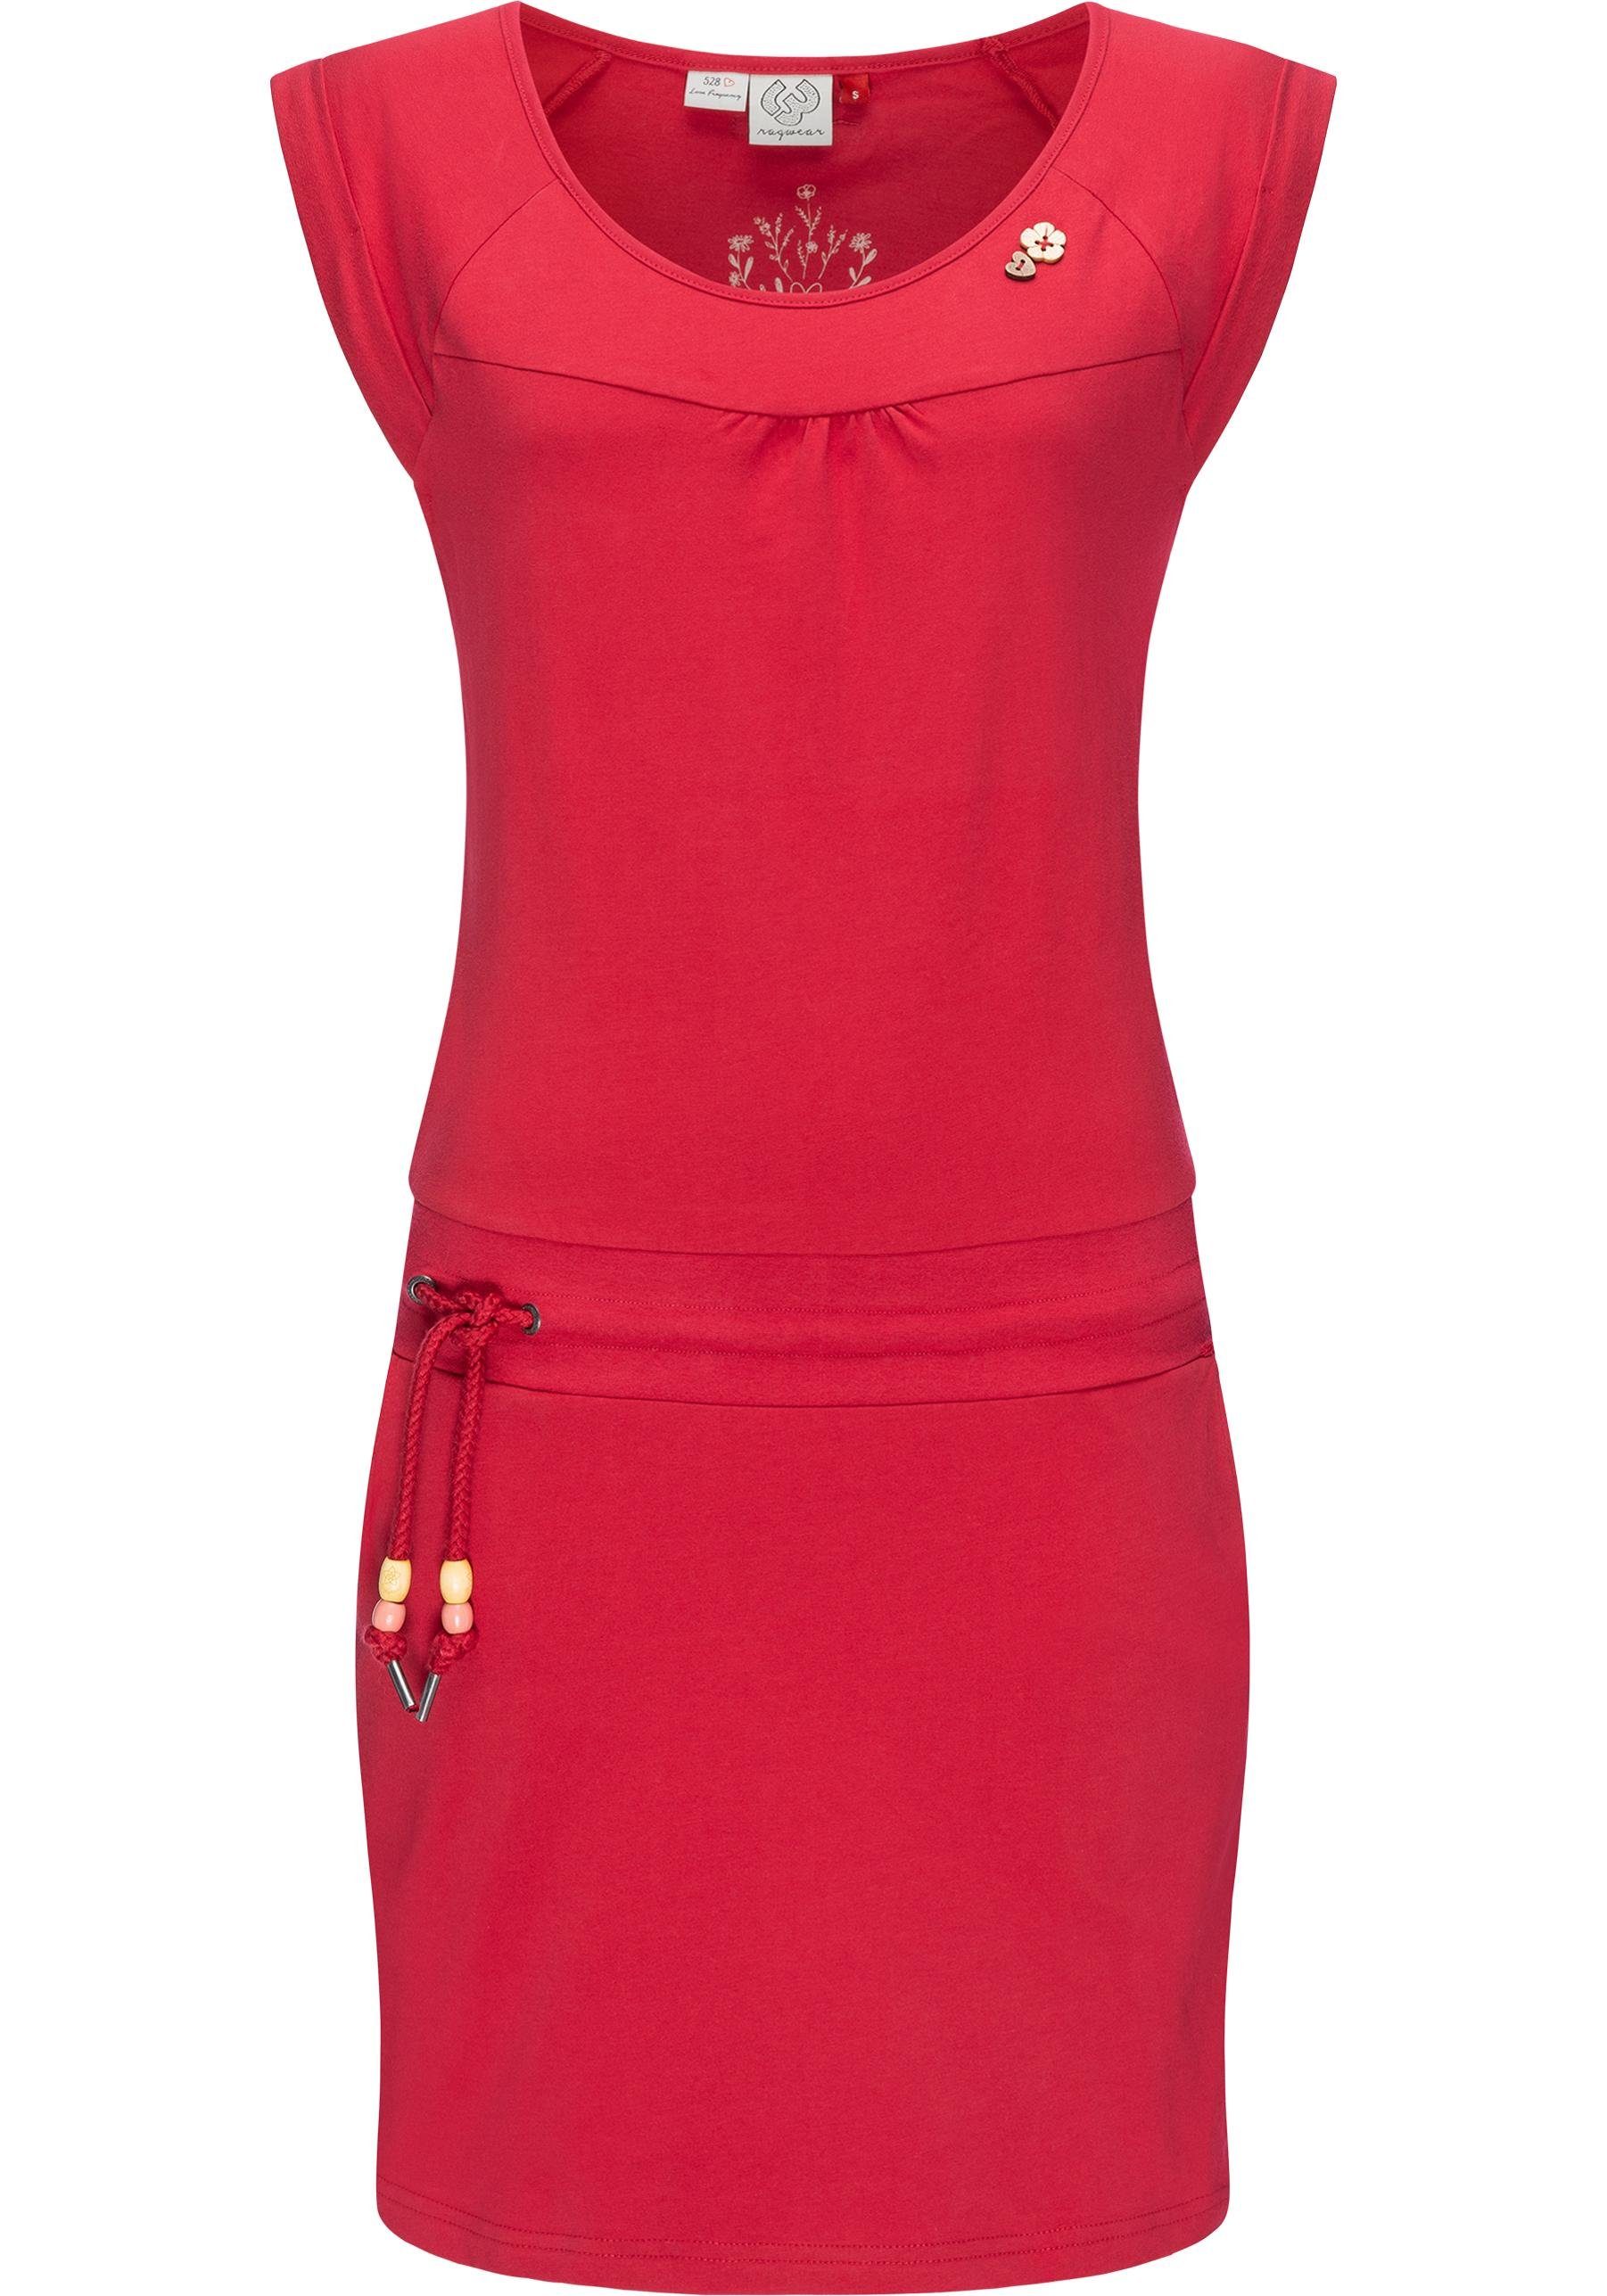 Ragwear Sommerkleid Penelope leichtes Baumwoll Kleid mit Print cherryrot